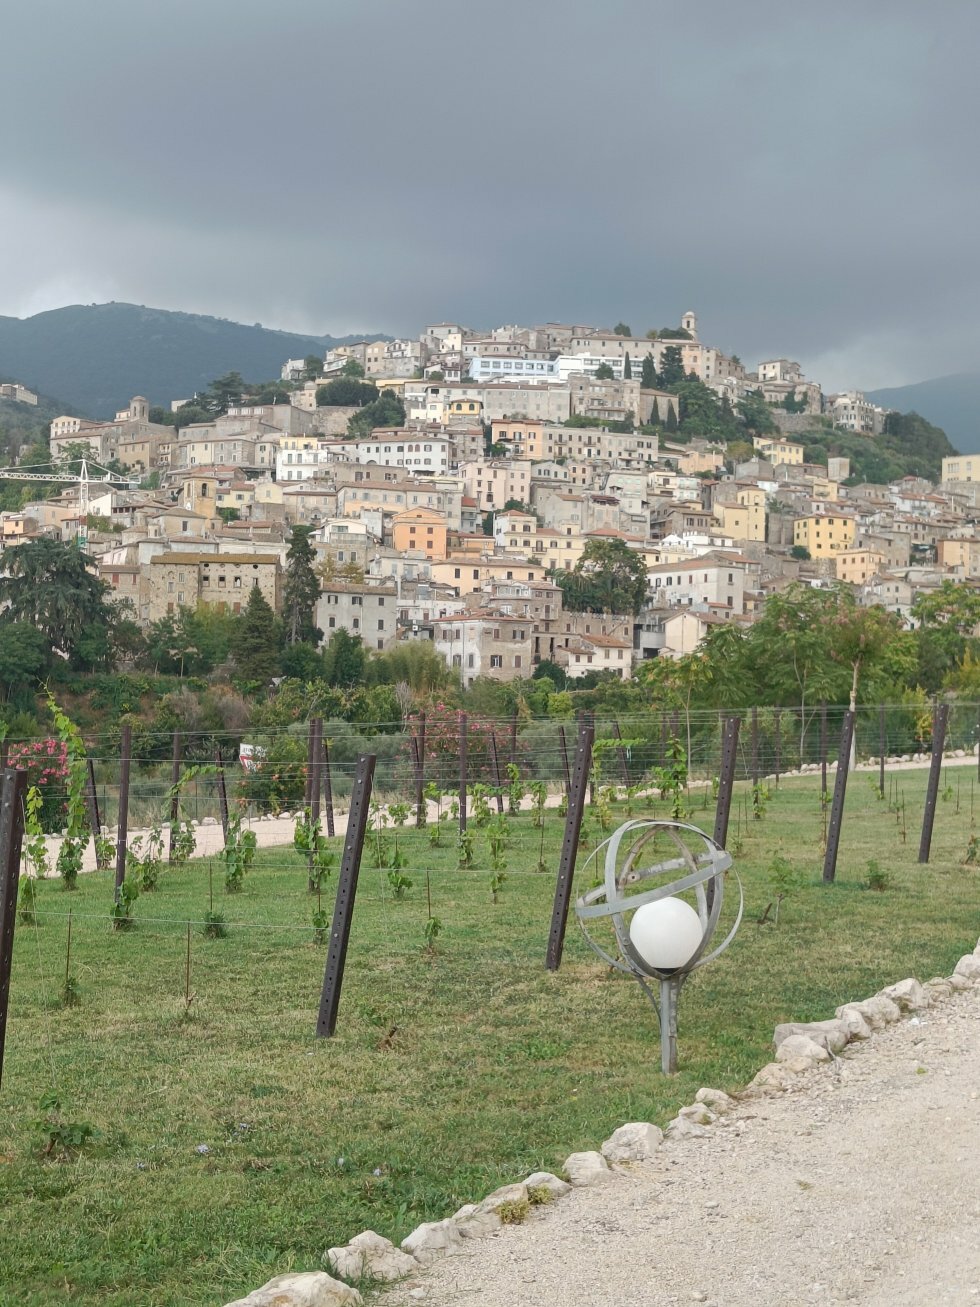 De bjerg-liggende små byer i landskabet. - Rejse-reportage: Kulinarisk roadtrip i Lazio-regionen i Italien